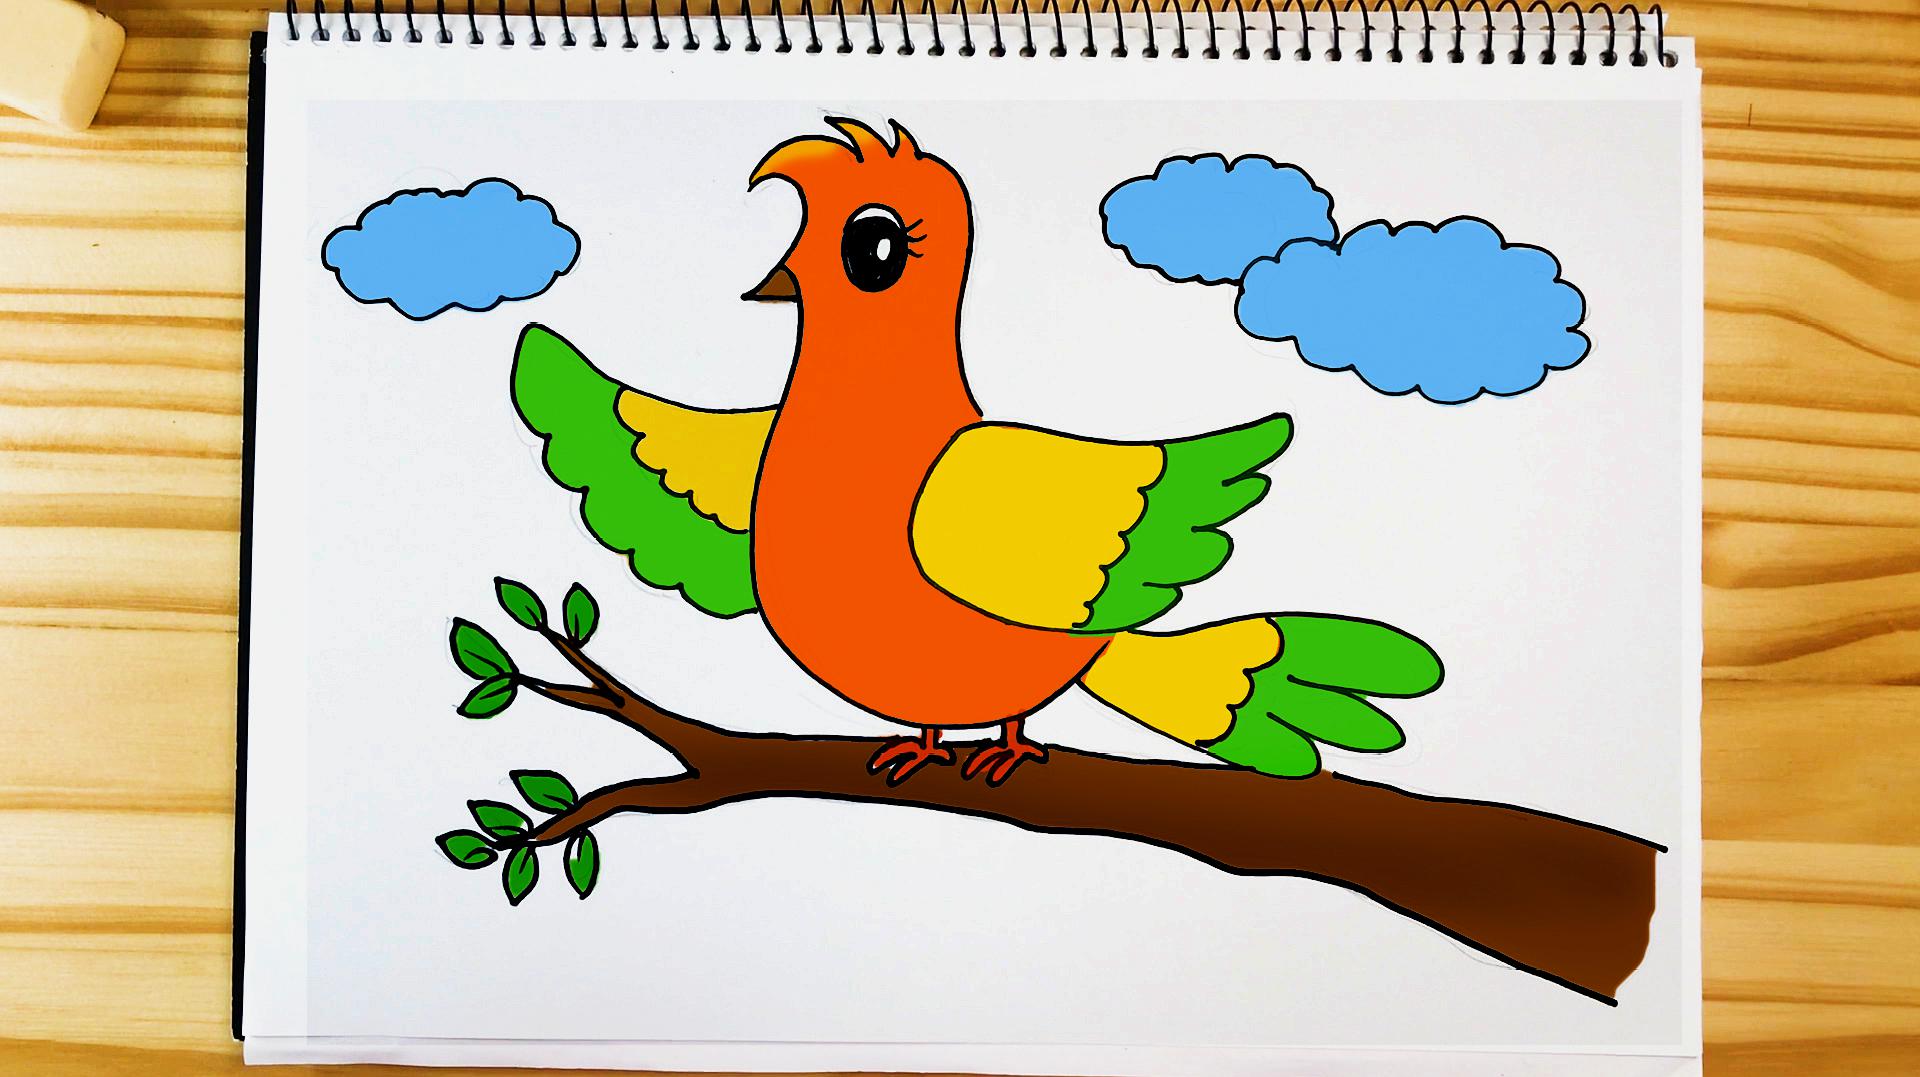 亲子儿童简笔画 用数字20画小鸟,快来试试吧!